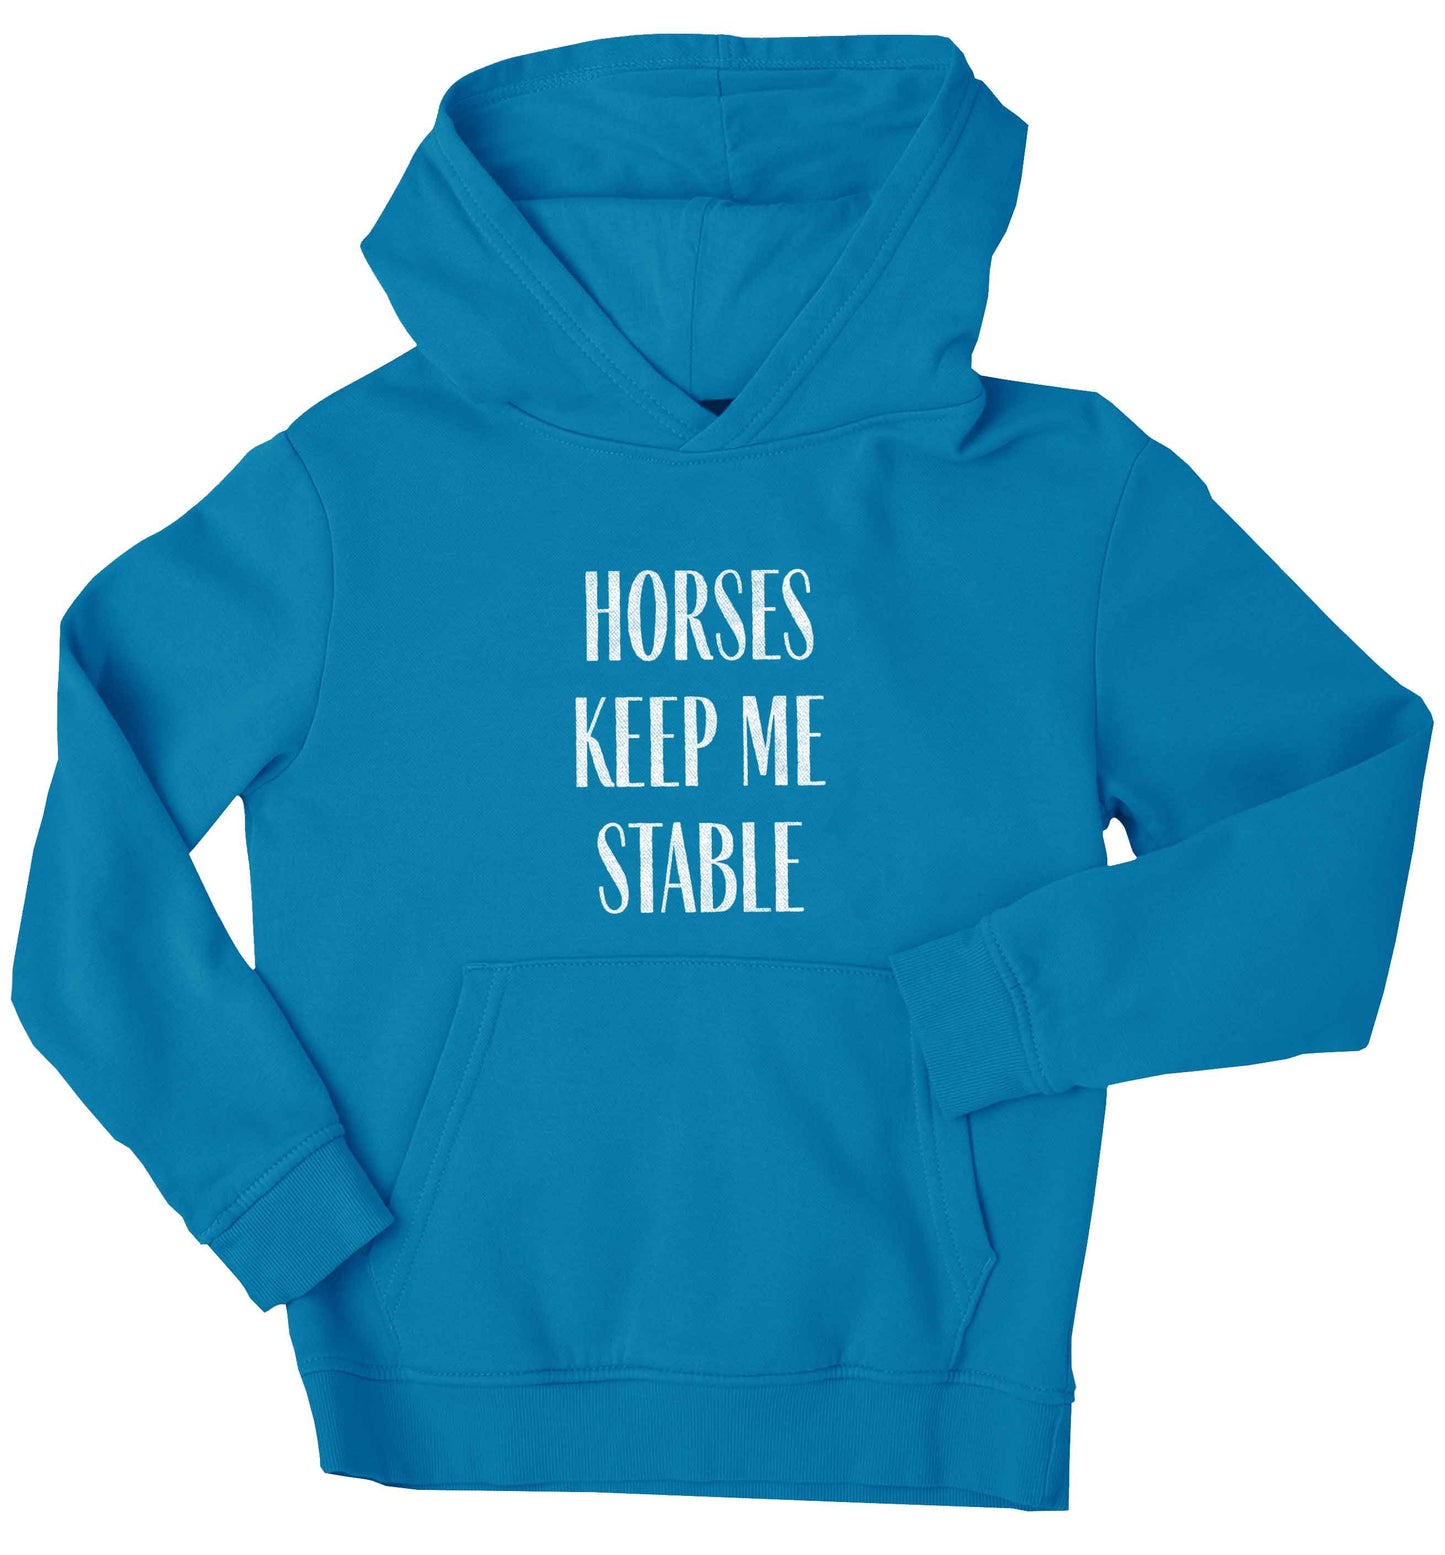 Horses keep me stable children's blue hoodie 12-13 Years